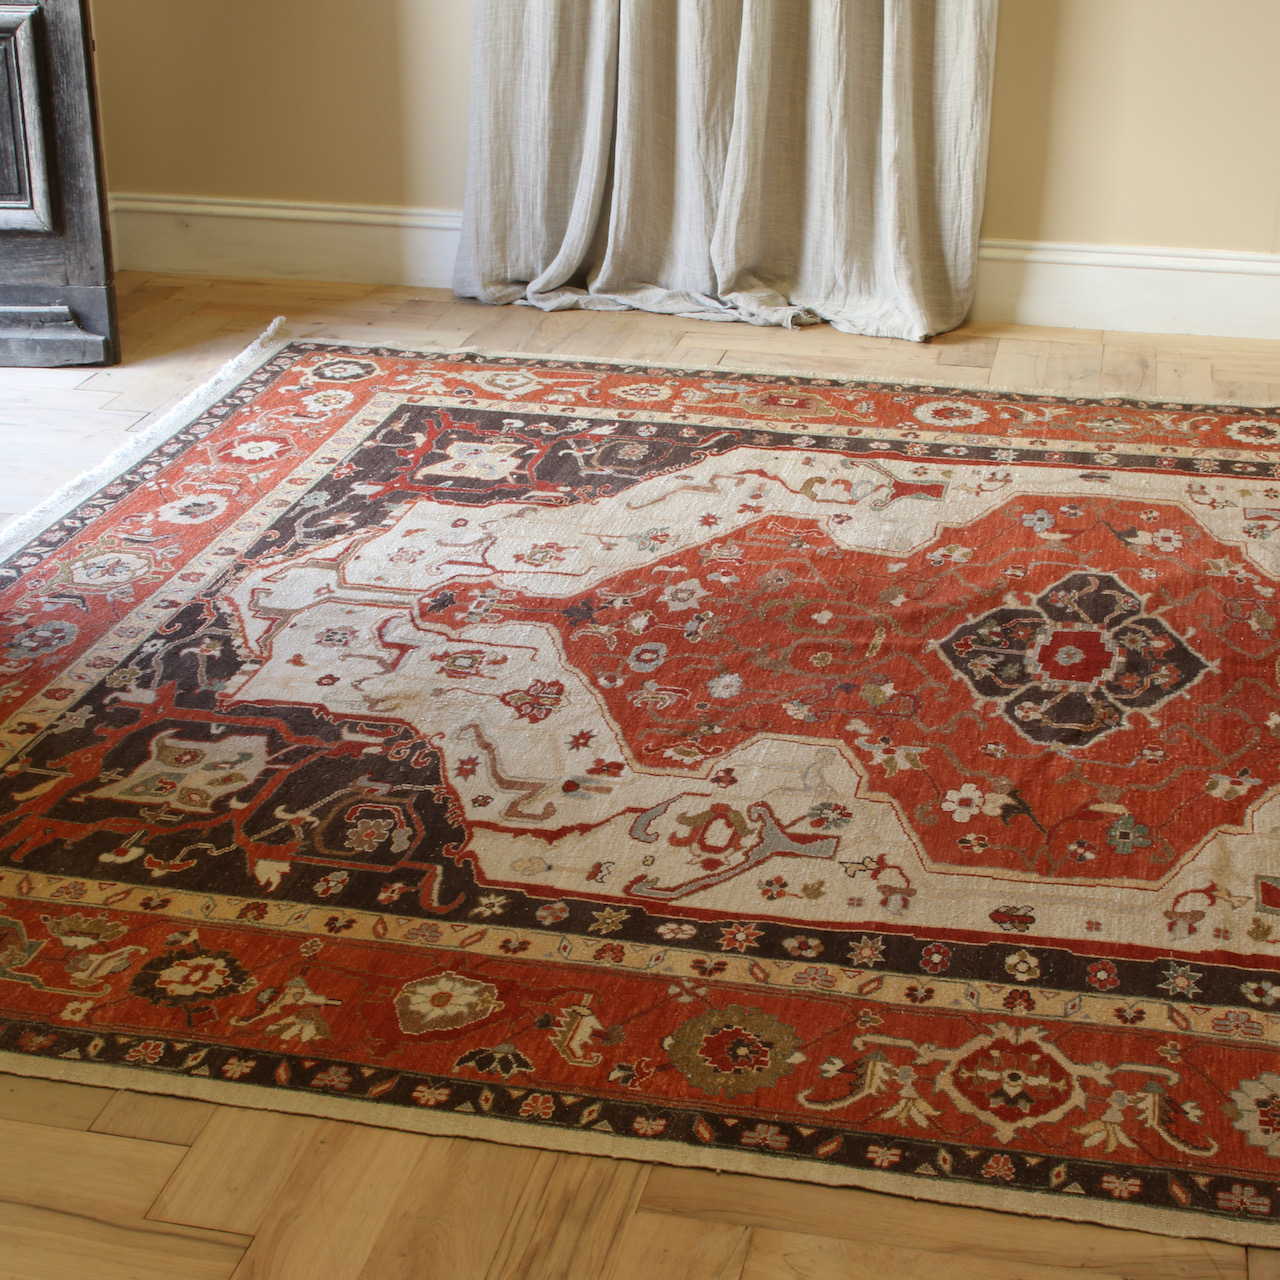 133-15 - Large Turkish Carpet